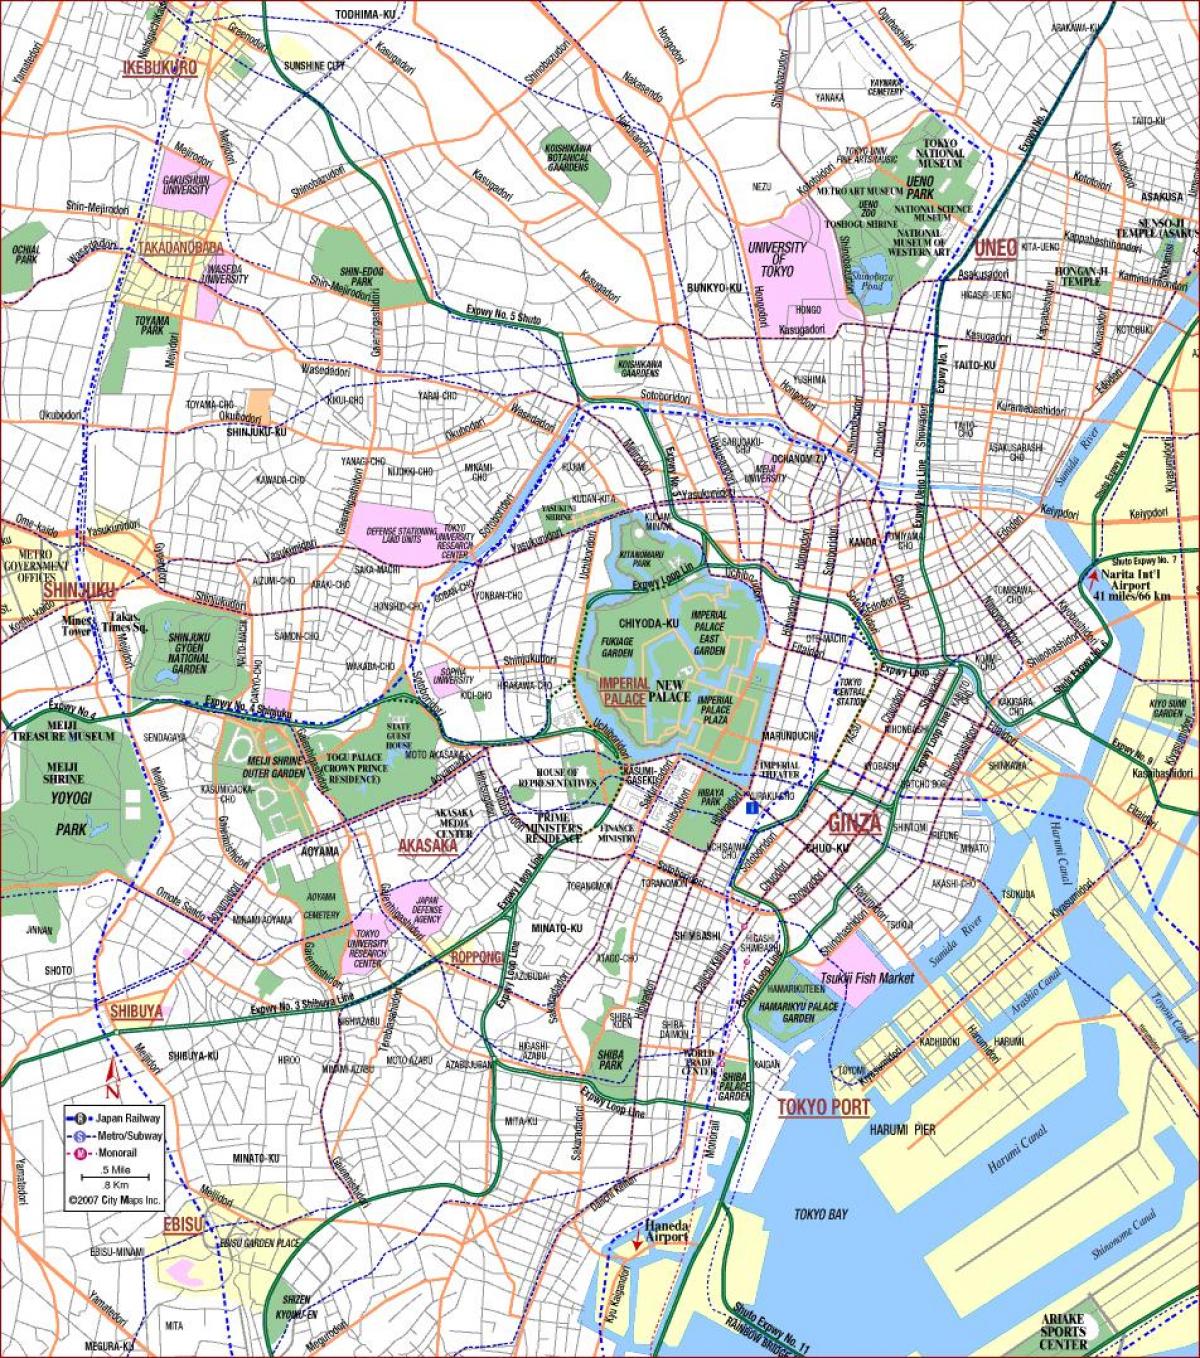 خريطة طوكيو الحدائق